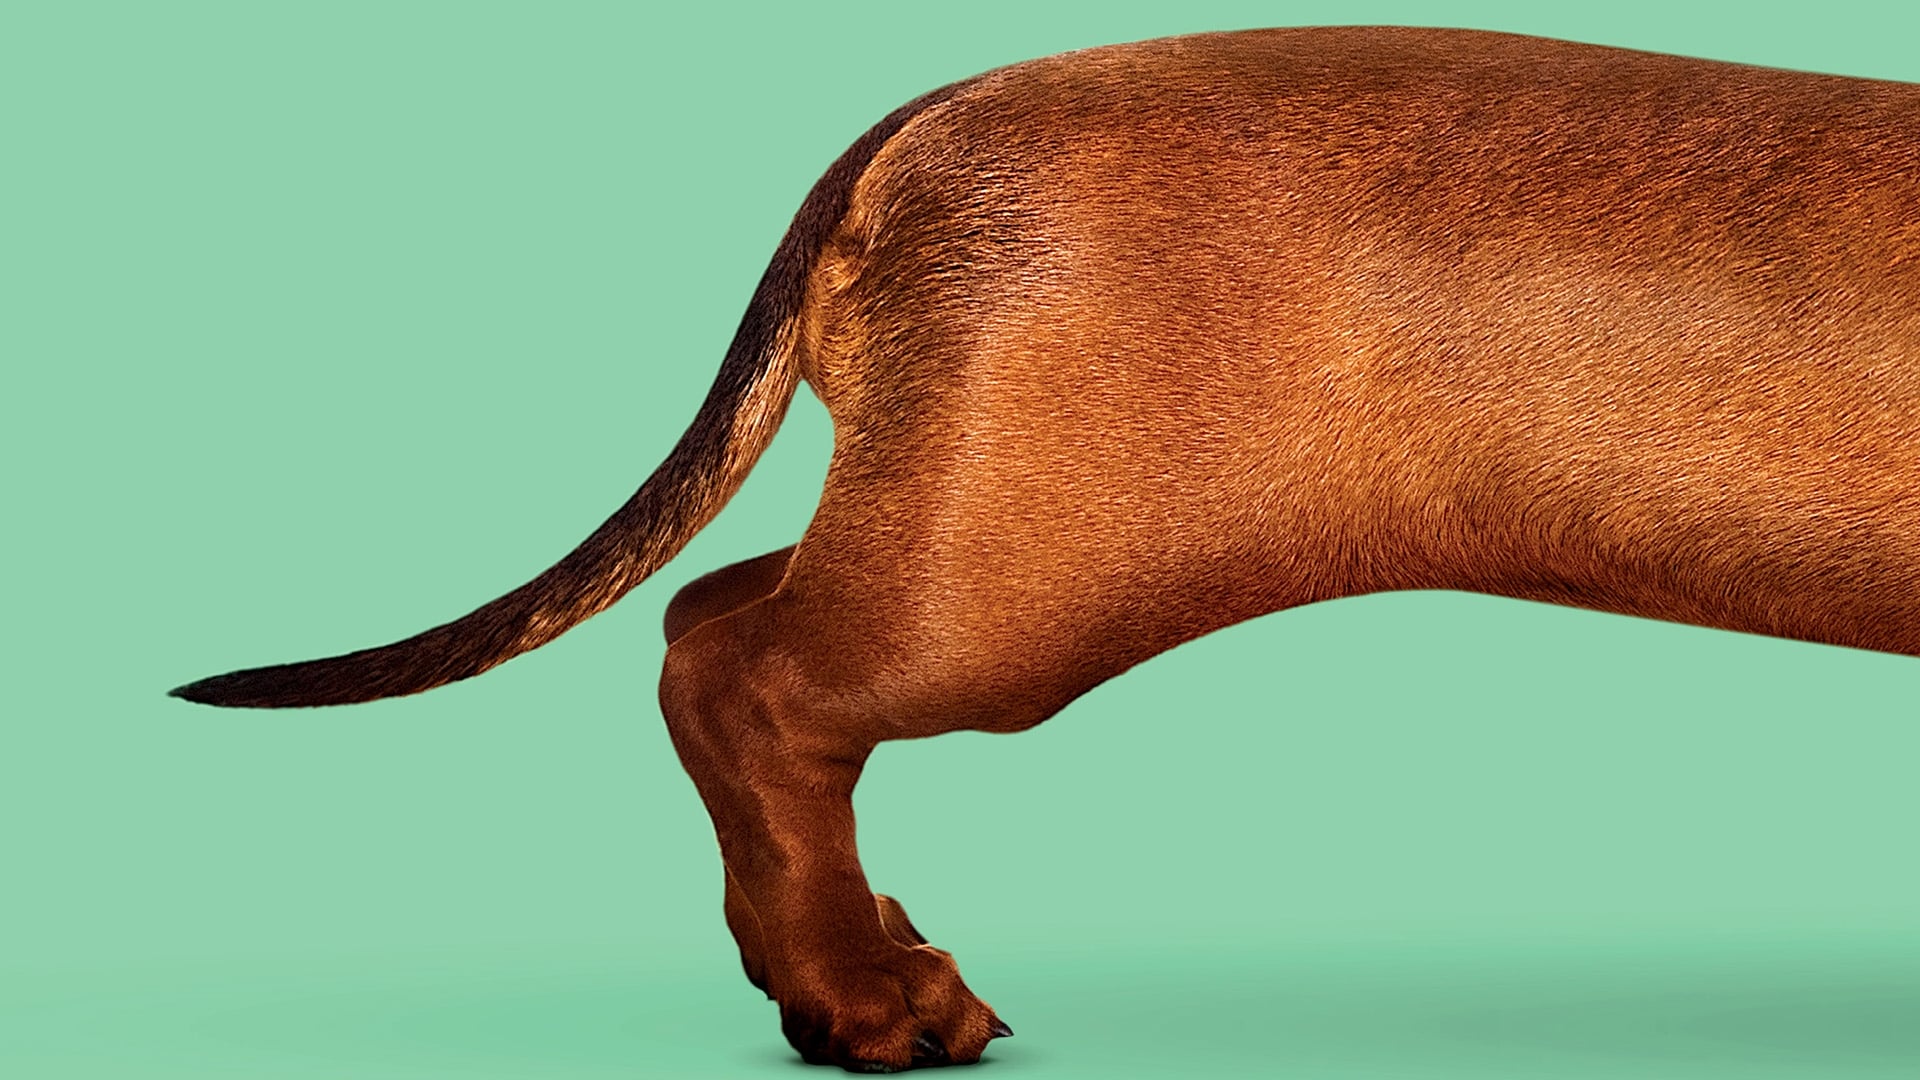 Wiener-Dog 2016 123movies